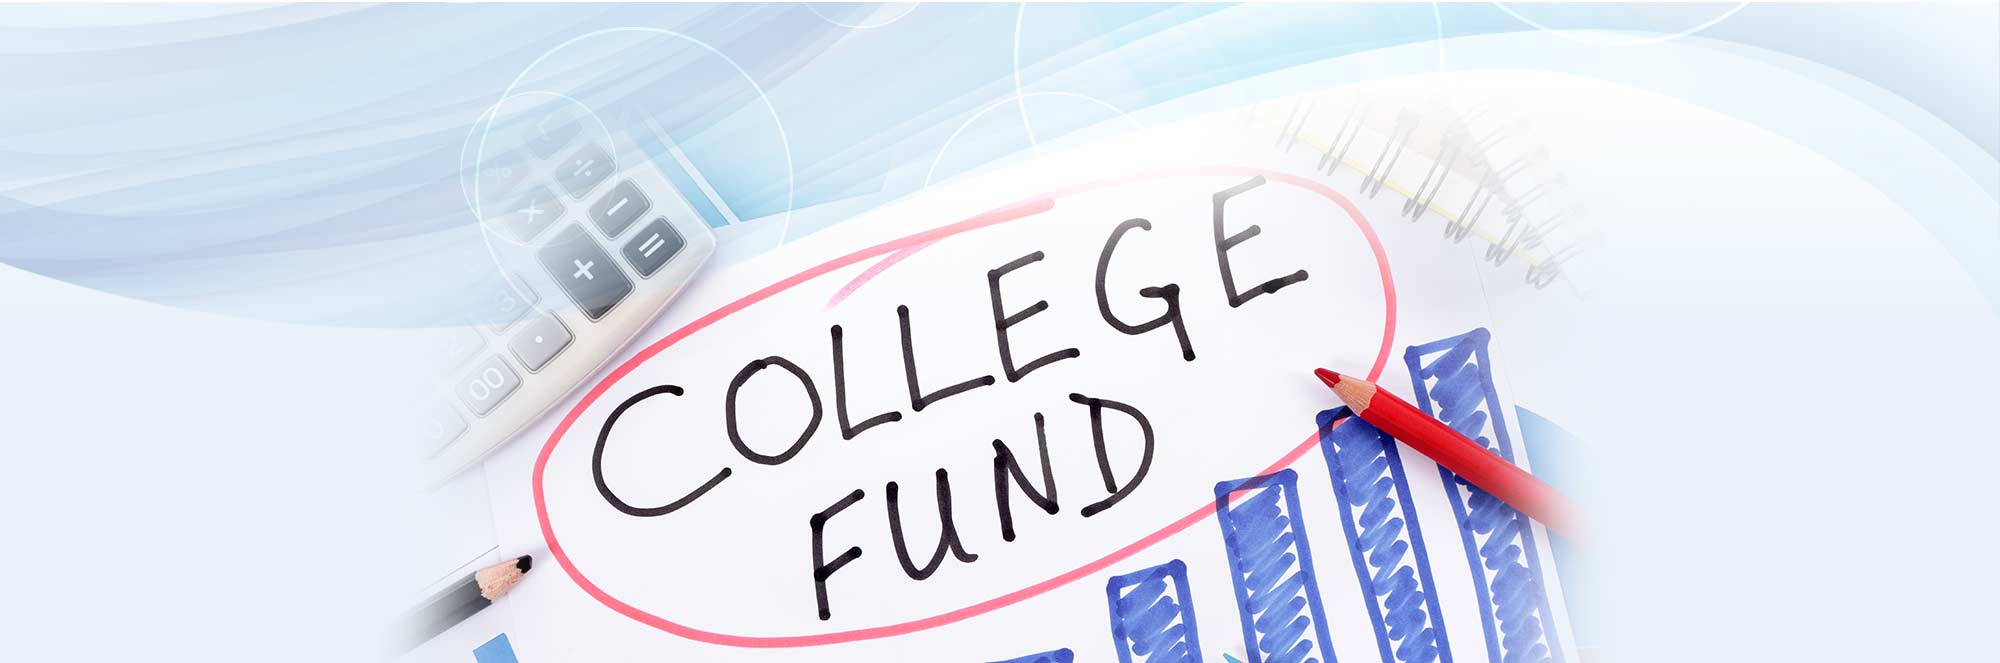 college-fund